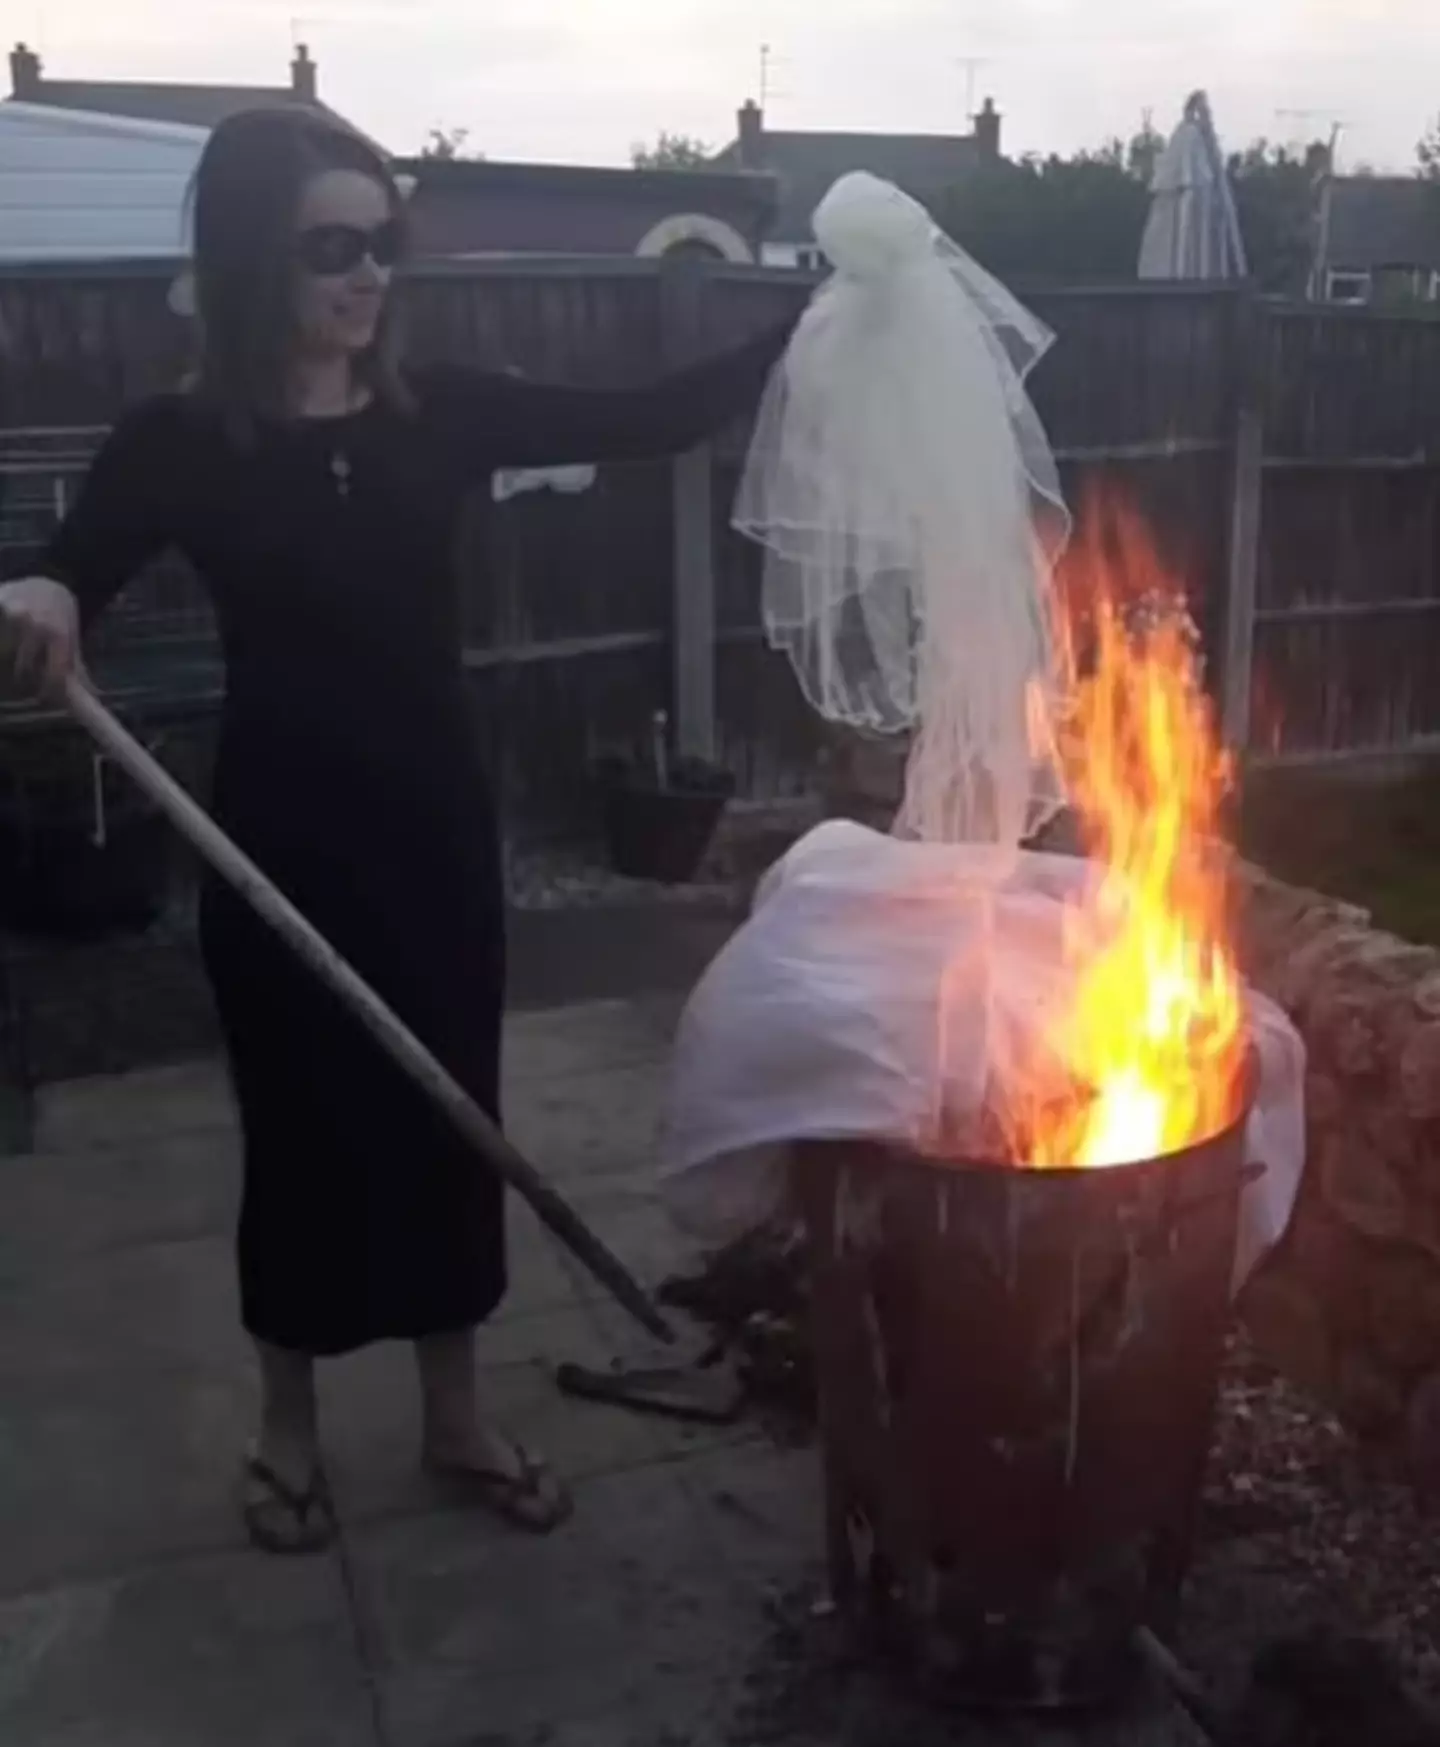 Emma burned her dress in a bin.